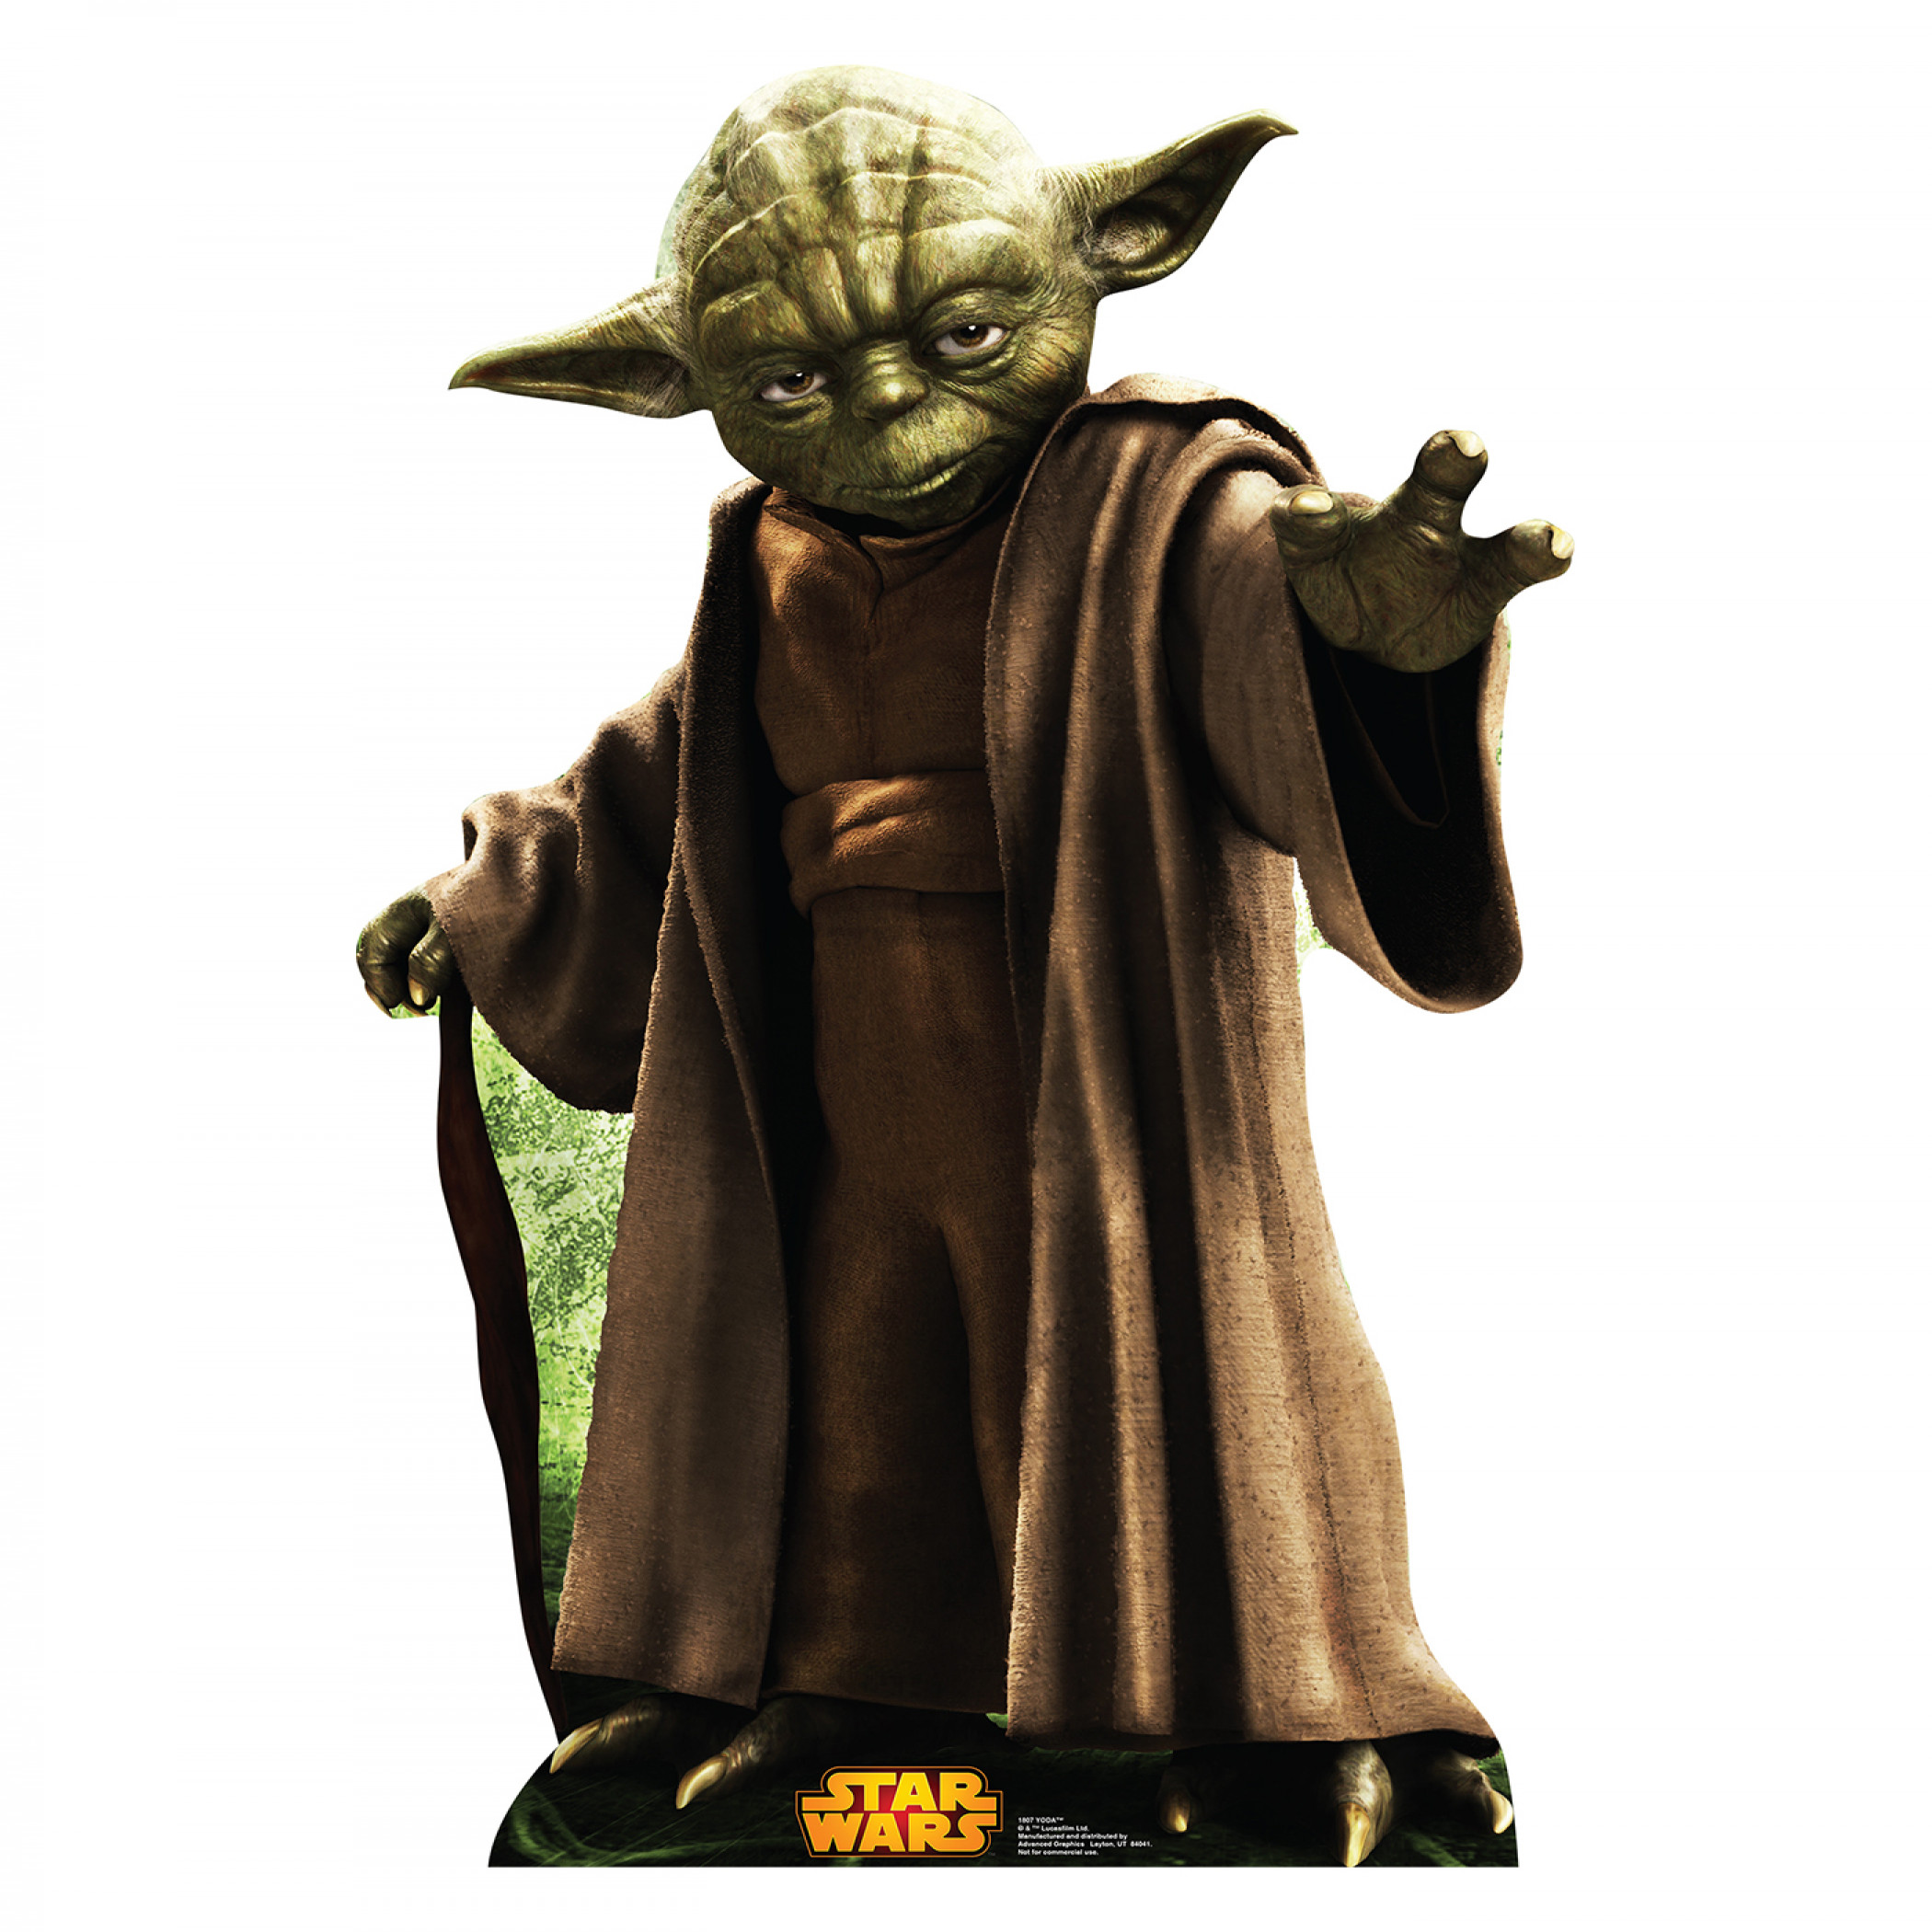 Star Wars Yoda Cardboard Stand Up